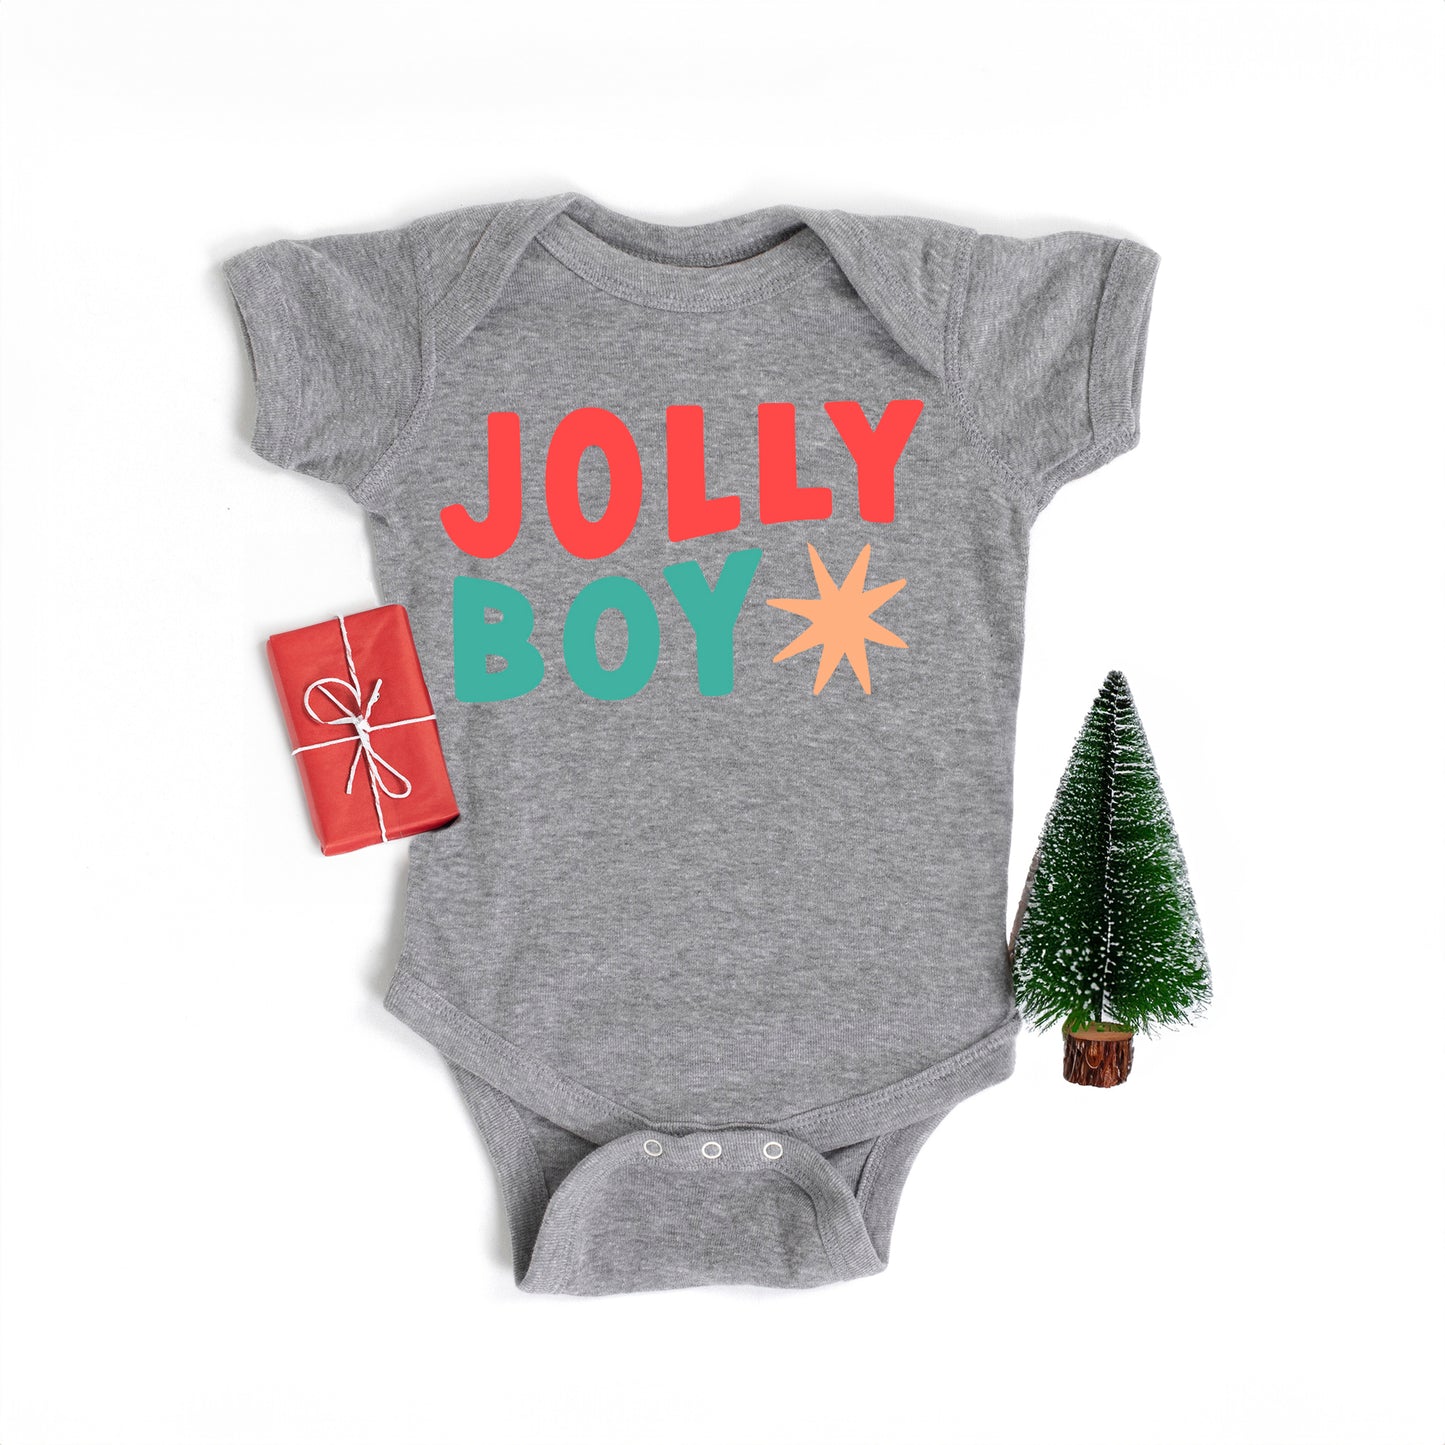 Jolly Boy Star | Baby Graphic Short Sleeve Onesie